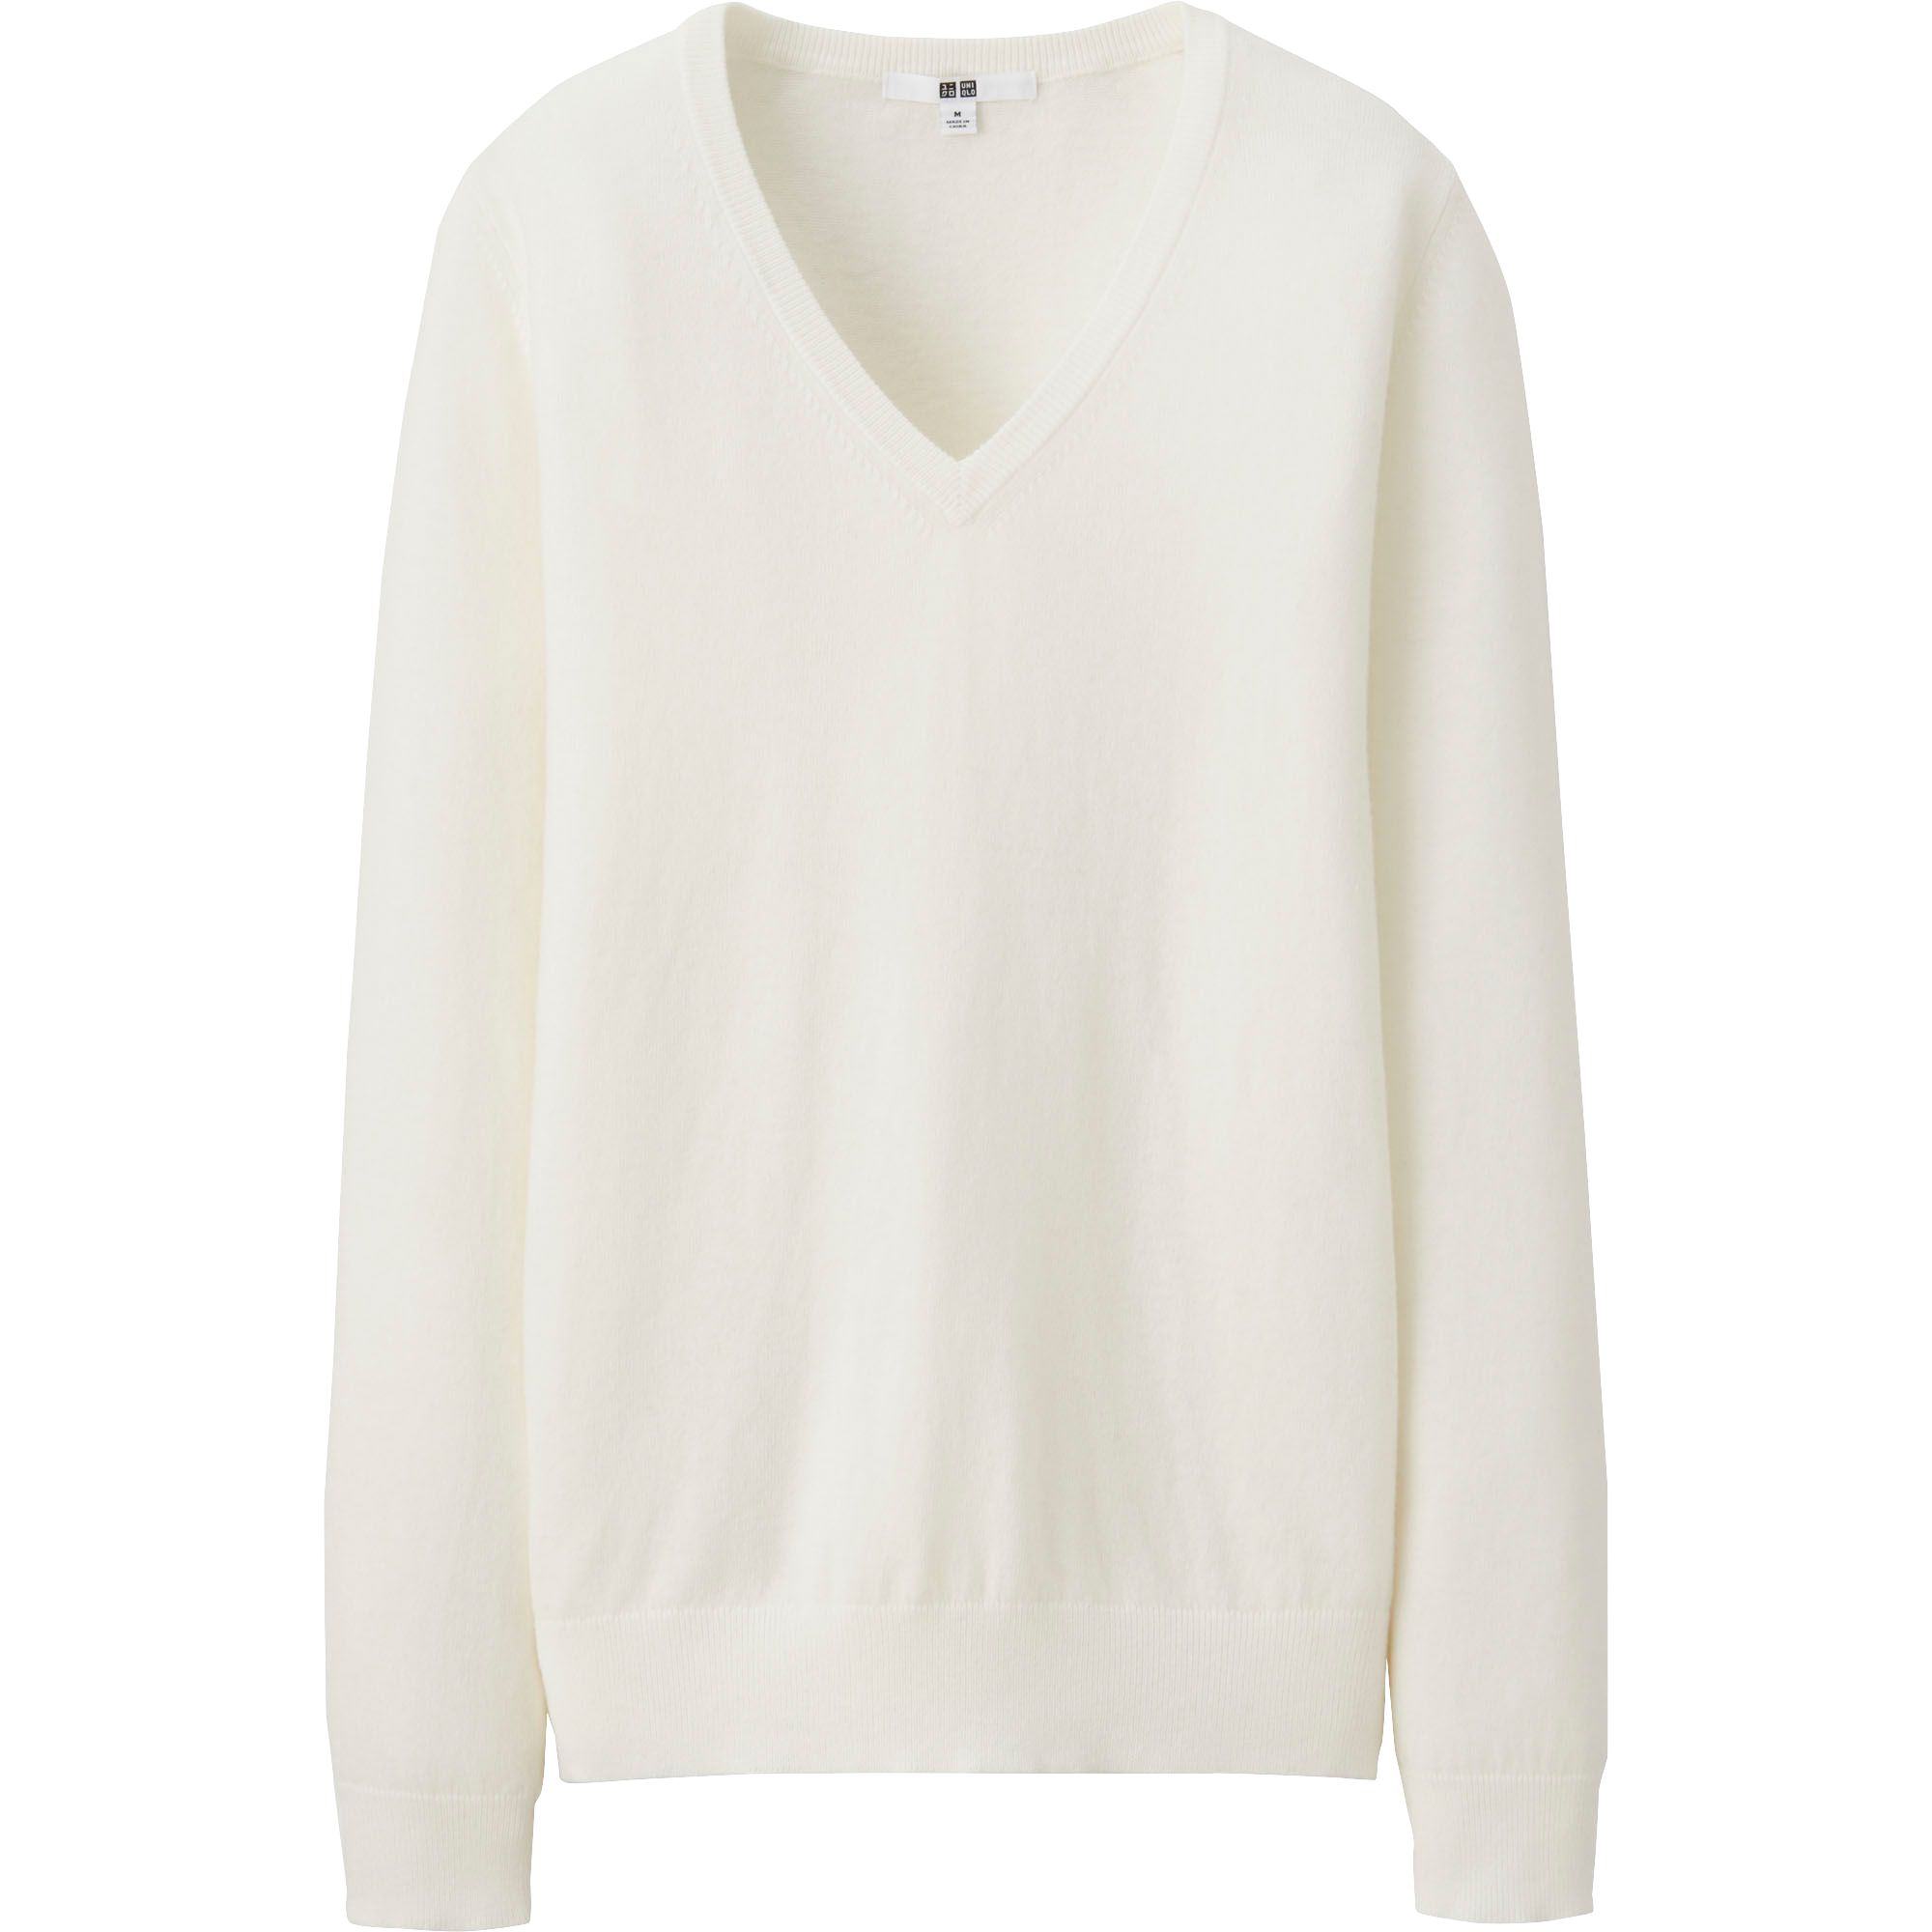 Uniqlo Women Cotton Cashmere V Neck Sweater in White (OFF WHITE)